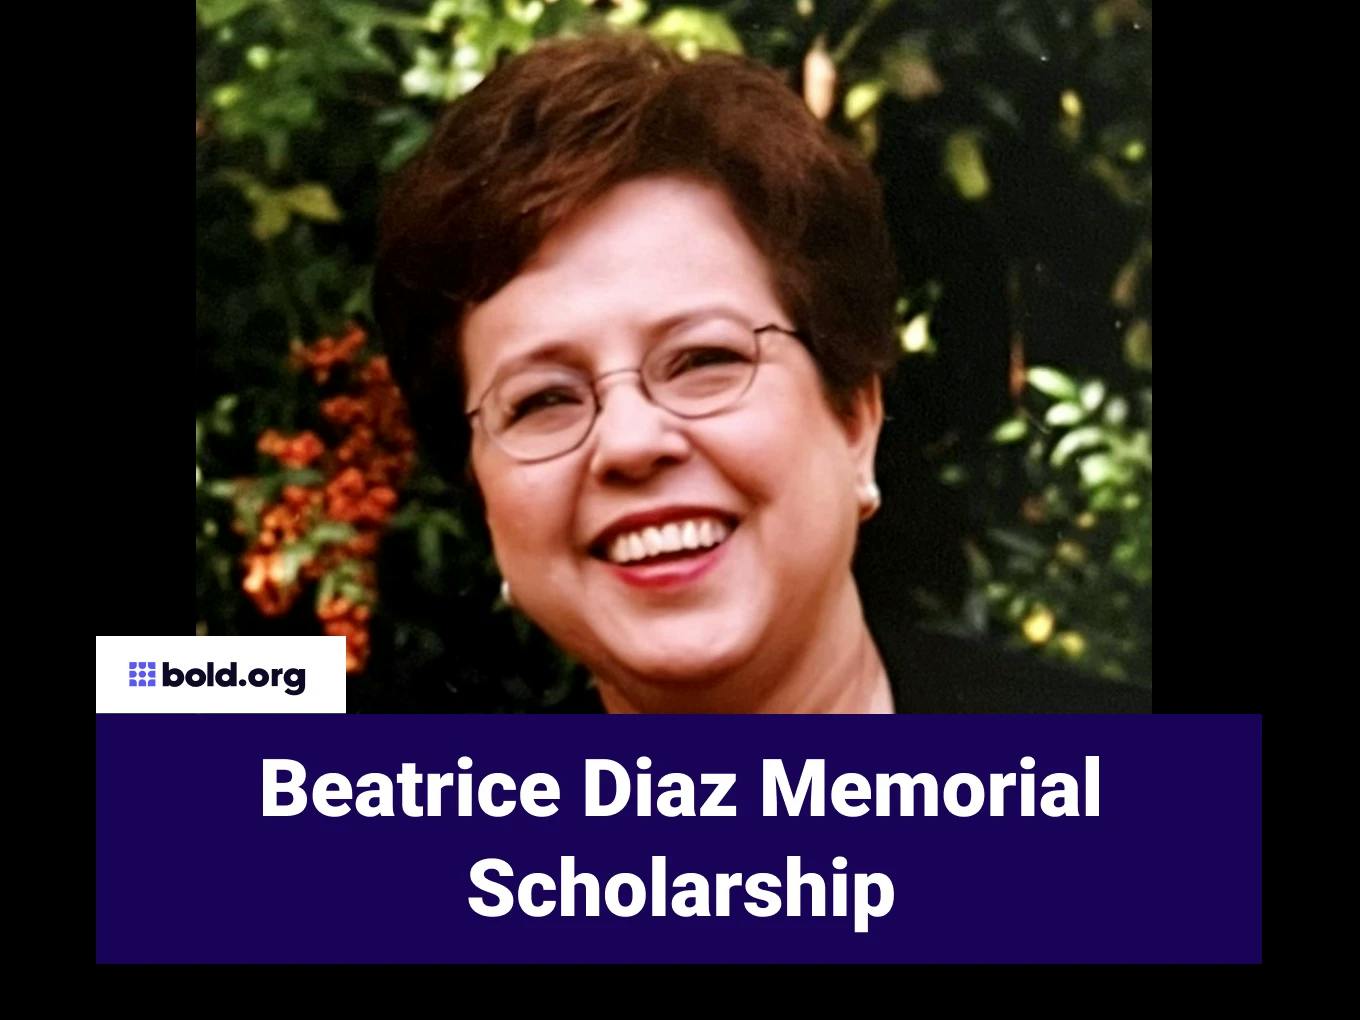 Beatrice Diaz Memorial Scholarship